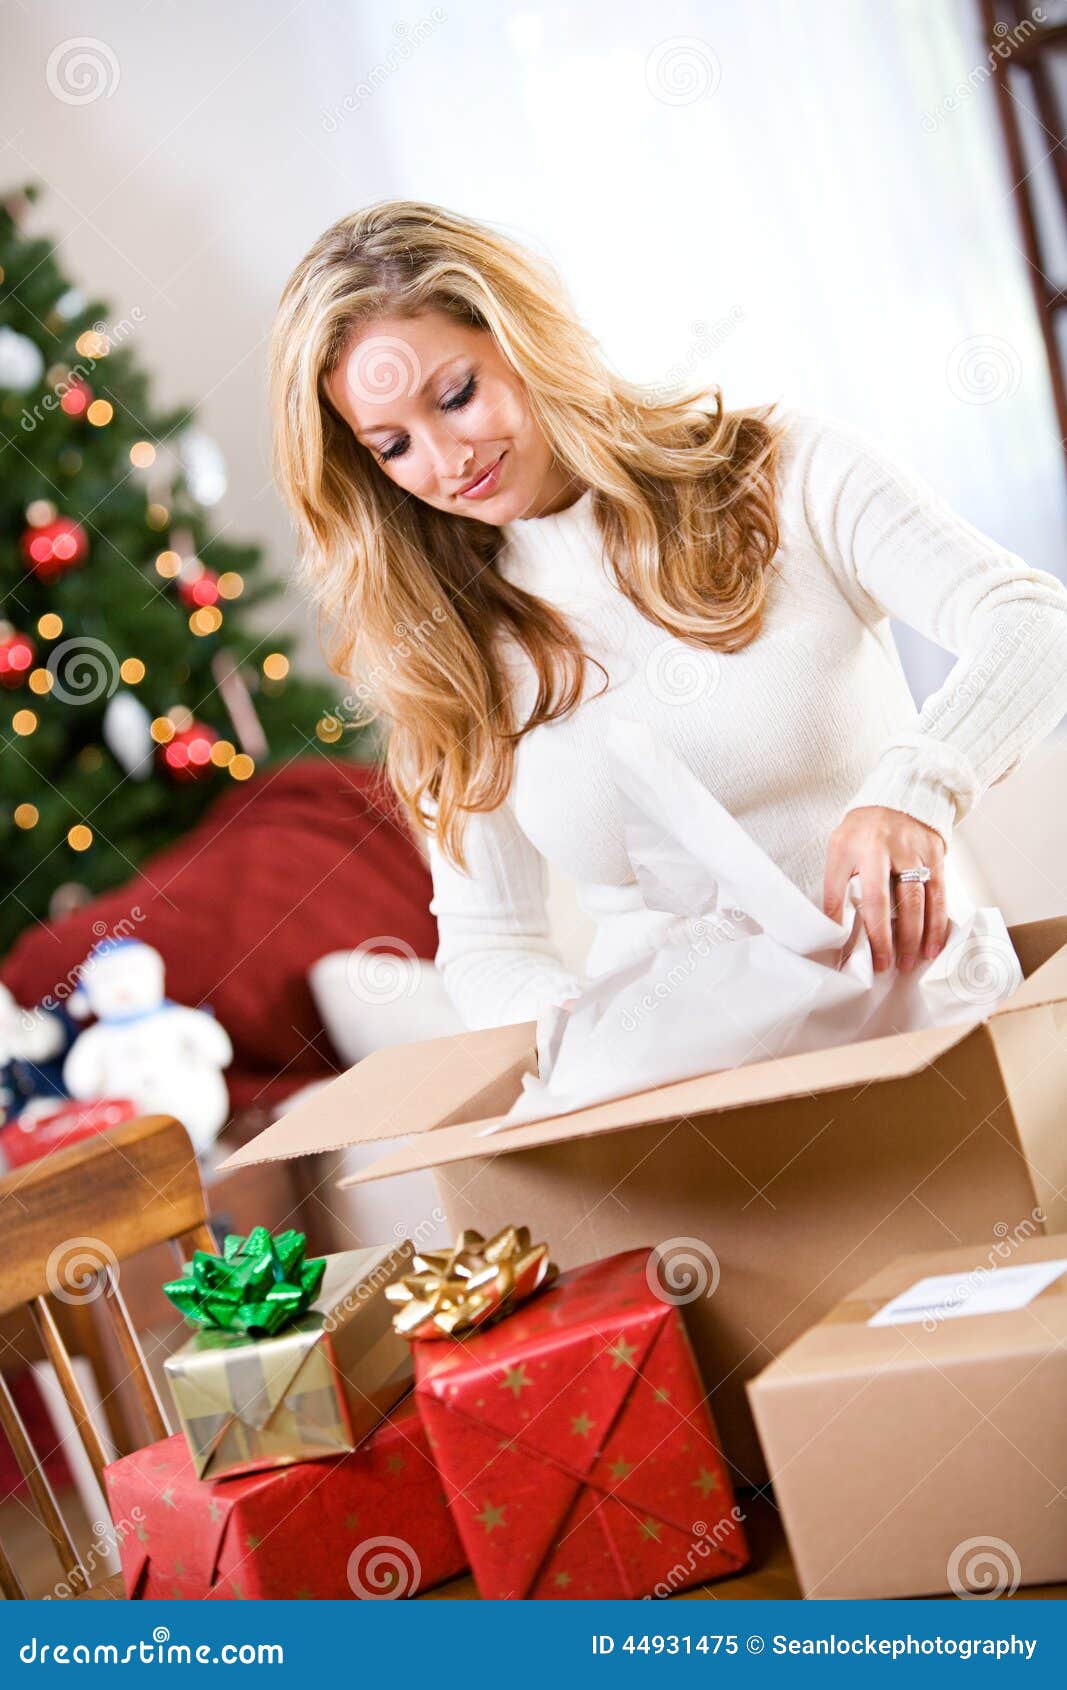 Weihnachten Frauen Verpackungs Geschenke Im Versand Kasten Stockbild Bild Von Geschenke Frauen